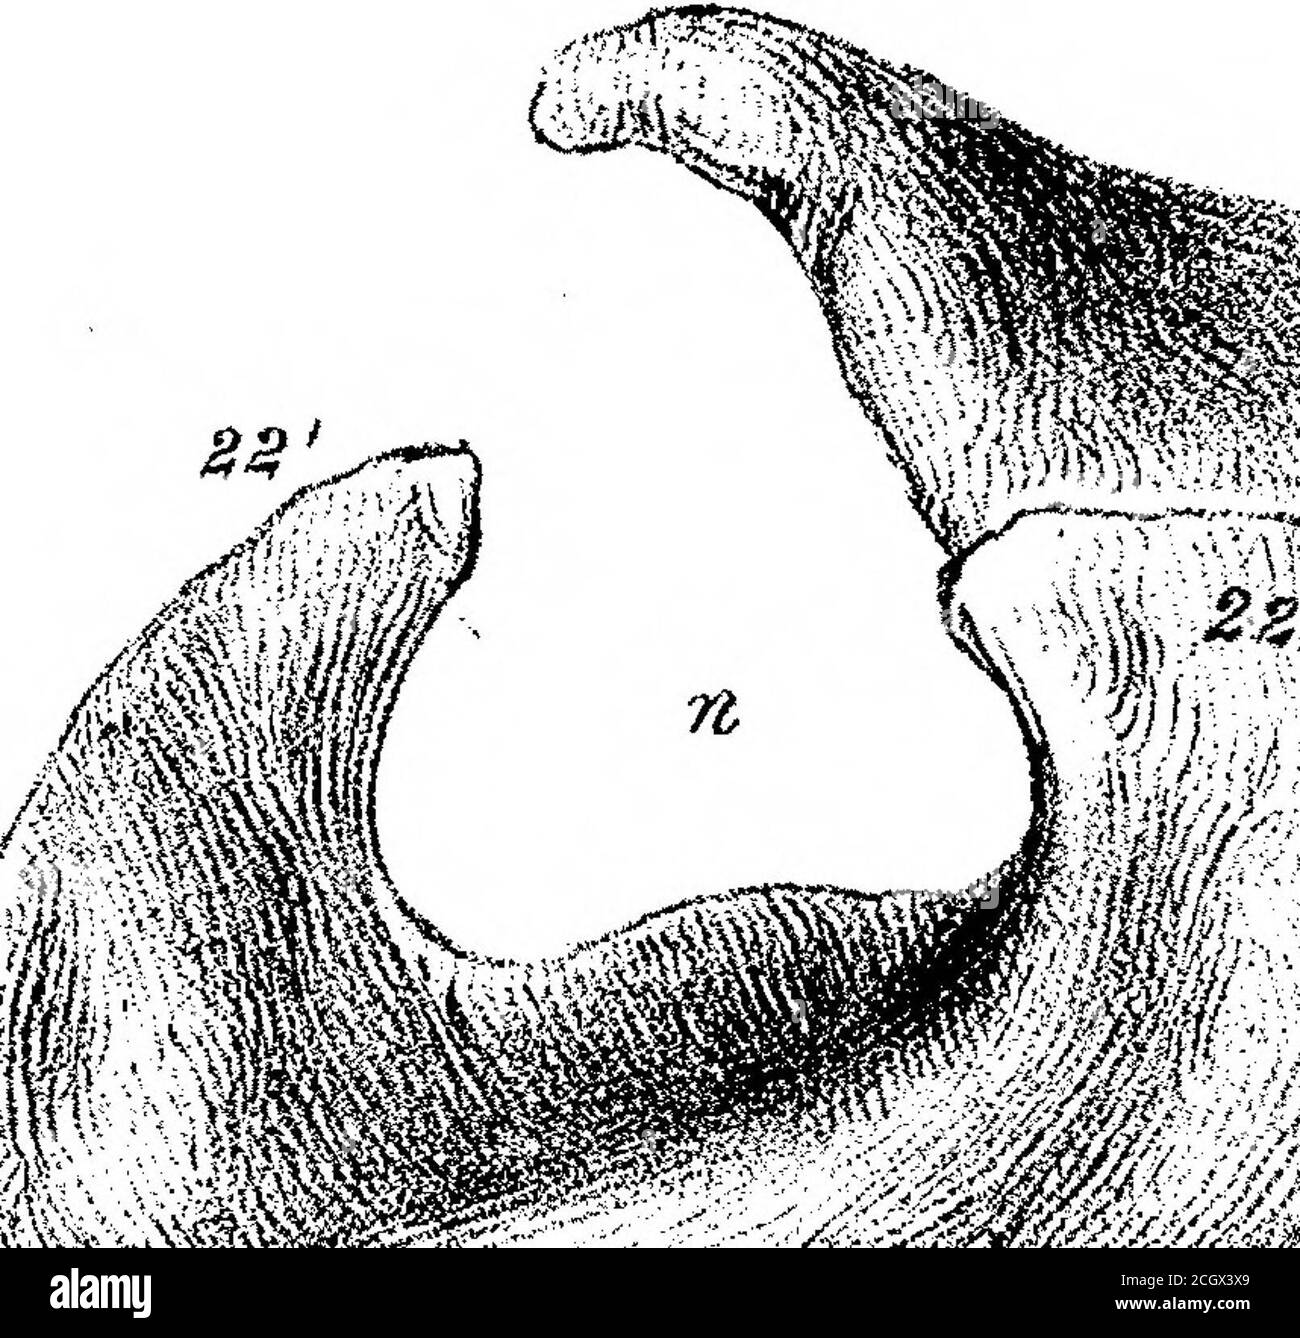 . Sui mammiferi fossili dell'Australia. Parte III. Diprotodon australis, Owen. Eft humerus.Fig. 2. Vista frontale dell'omero sinistro.Fig. 3, estremità prossimale dell'omero sinistro. Fig. 4. Estremità distale dell'omero sinistro. Fig. 5. Vista laterale interna del terzo distale di un omero destro. Un terzo delle dimensioni nat. 578 PEOEESSOE OWEN SUI MAMMIFERI EOSSIL OE AUSTEALIA. PIASTRA XVII. Fig. 1. Vista sotto o semale del bacino Fig. 2. Vista superiore o neurale del sacro e della metà destra del bacino. Fig. 3. Vista frontale del sacrum. Fig. 4. Cavità acetabolare. [Vedere Admeasurements nel testo per la scala di riduzione. PIASTRA XLVIII, Fig. 1. Foto Stock